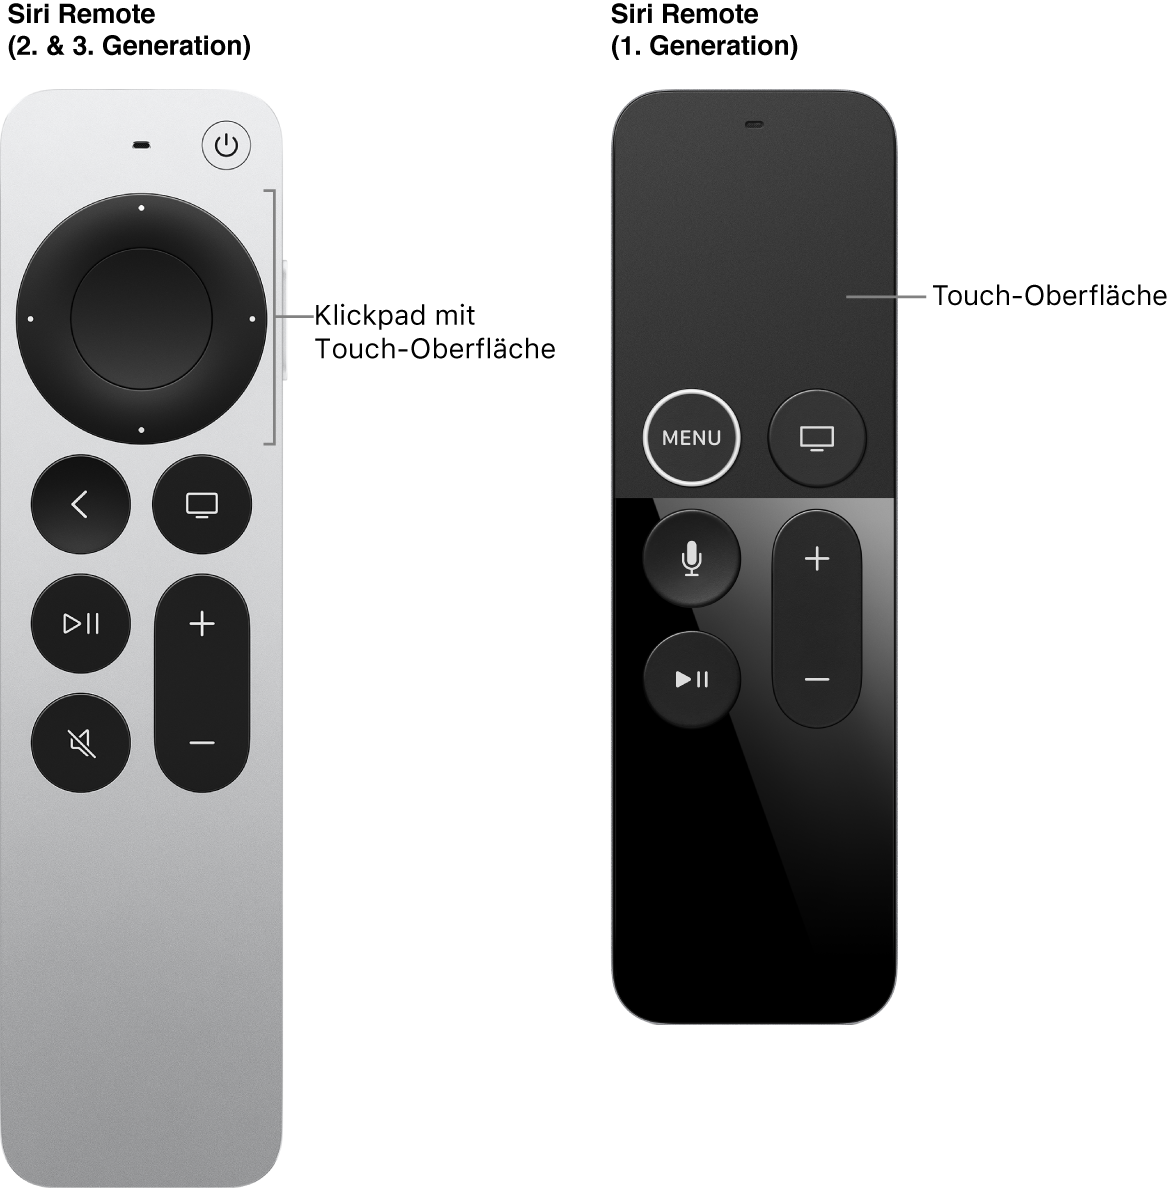 Siri Remote (2. und 3. Generation) mit Clickpad und Siri Remote (1. Generation) mit Touch-Oberfläche